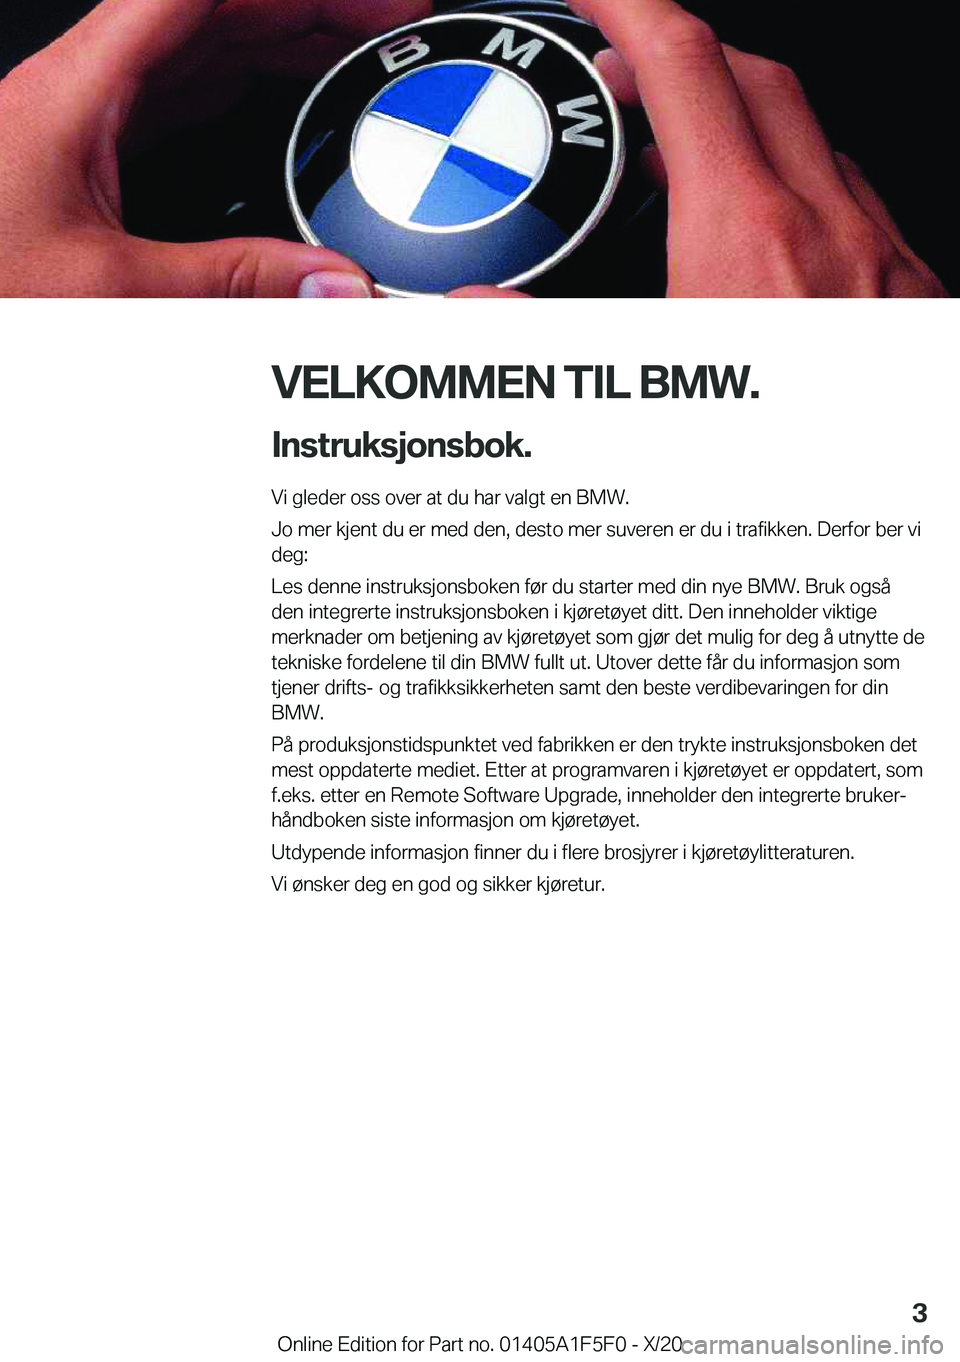 BMW X4 M 2021  InstruksjonsbØker (in Norwegian) �V�E�L�K�O�M�M�E�N��T�I�L��B�M�W�.�I�n�s�t�r�u�k�s�j�o�n�s�b�o�k�.
�V�i��g�l�e�d�e�r��o�s�s��o�v�e�r��a�t��d�u��h�a�r��v�a�l�g�t��e�n��B�M�W�.
�J�o��m�e�r��k�j�e�n�t��d�u��e�r��m�e�d�